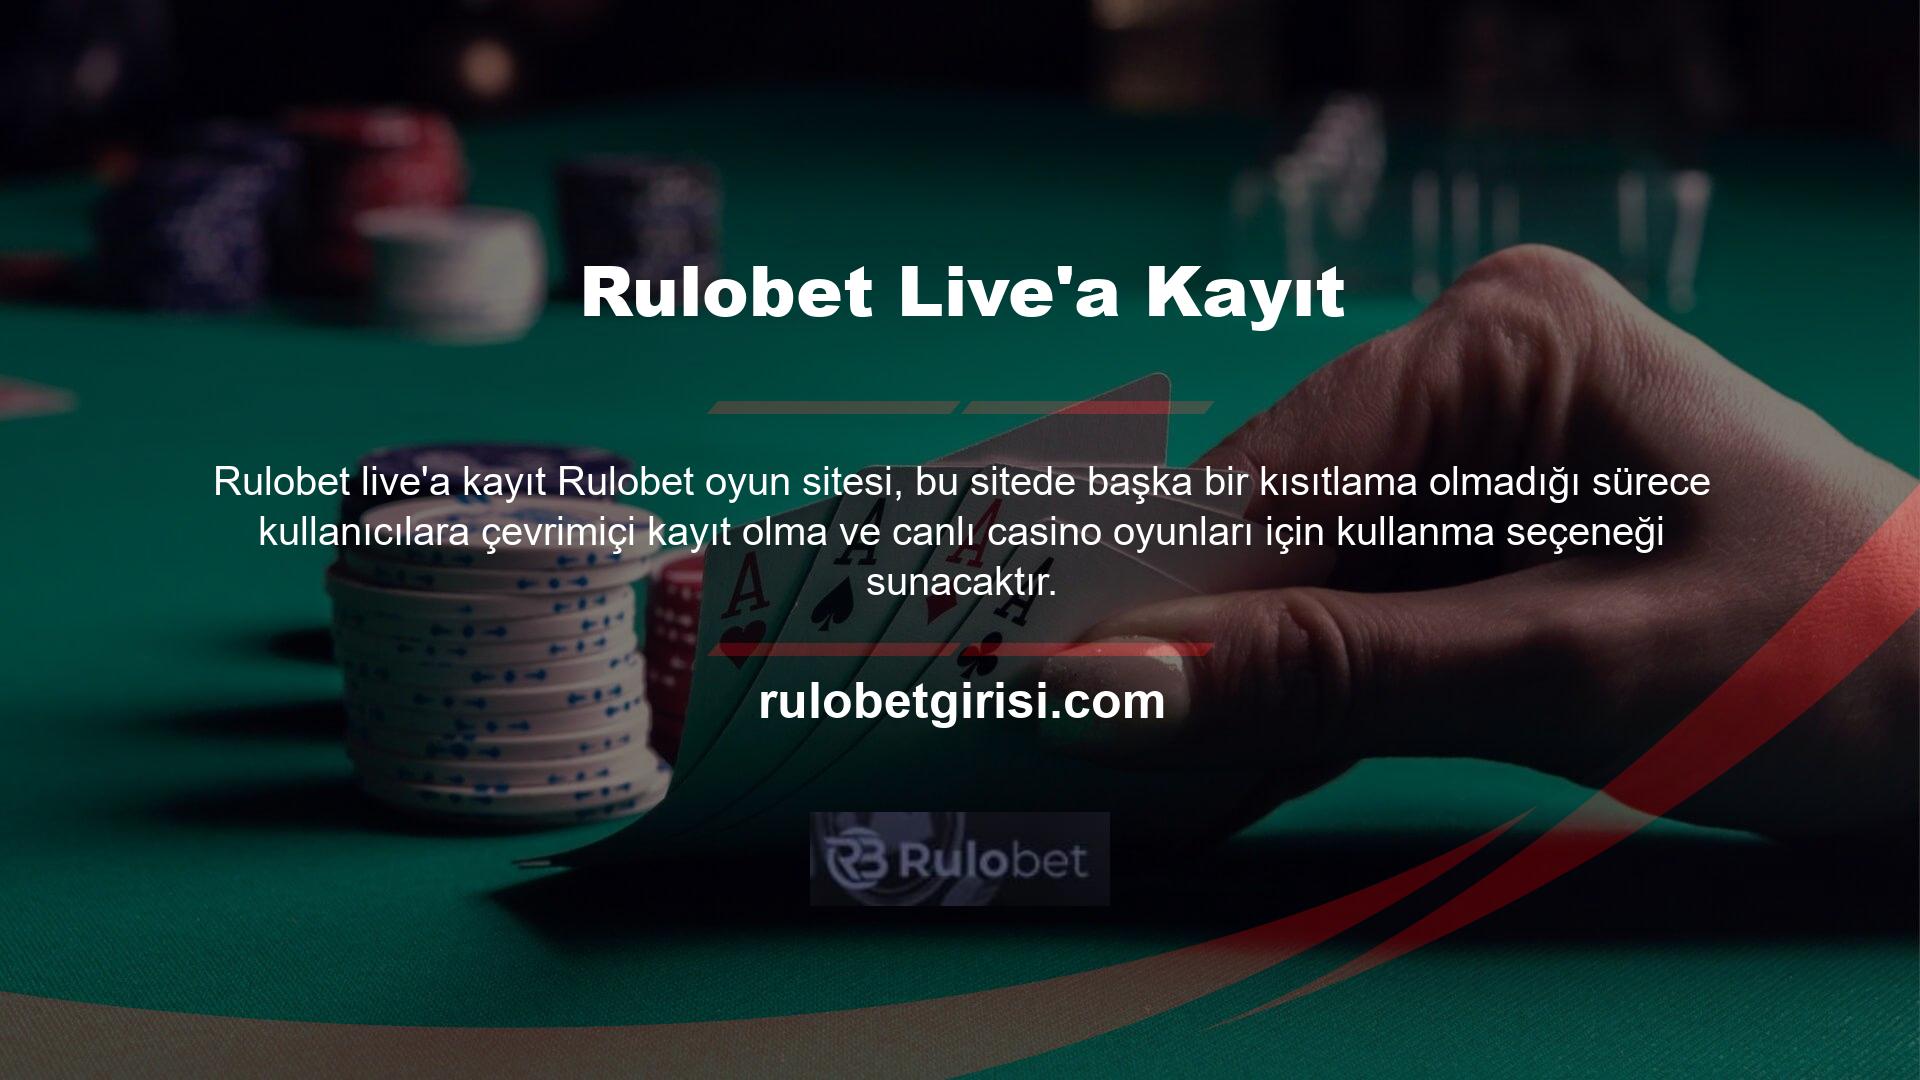 Rulobet, şirketin ülkemizdeki Casino ve casino endüstrisindeki önemli rolü nedeniyle Türk kullanıcıları çekmeyi ve onları kusursuz bir şekilde ağırlamayı başardı